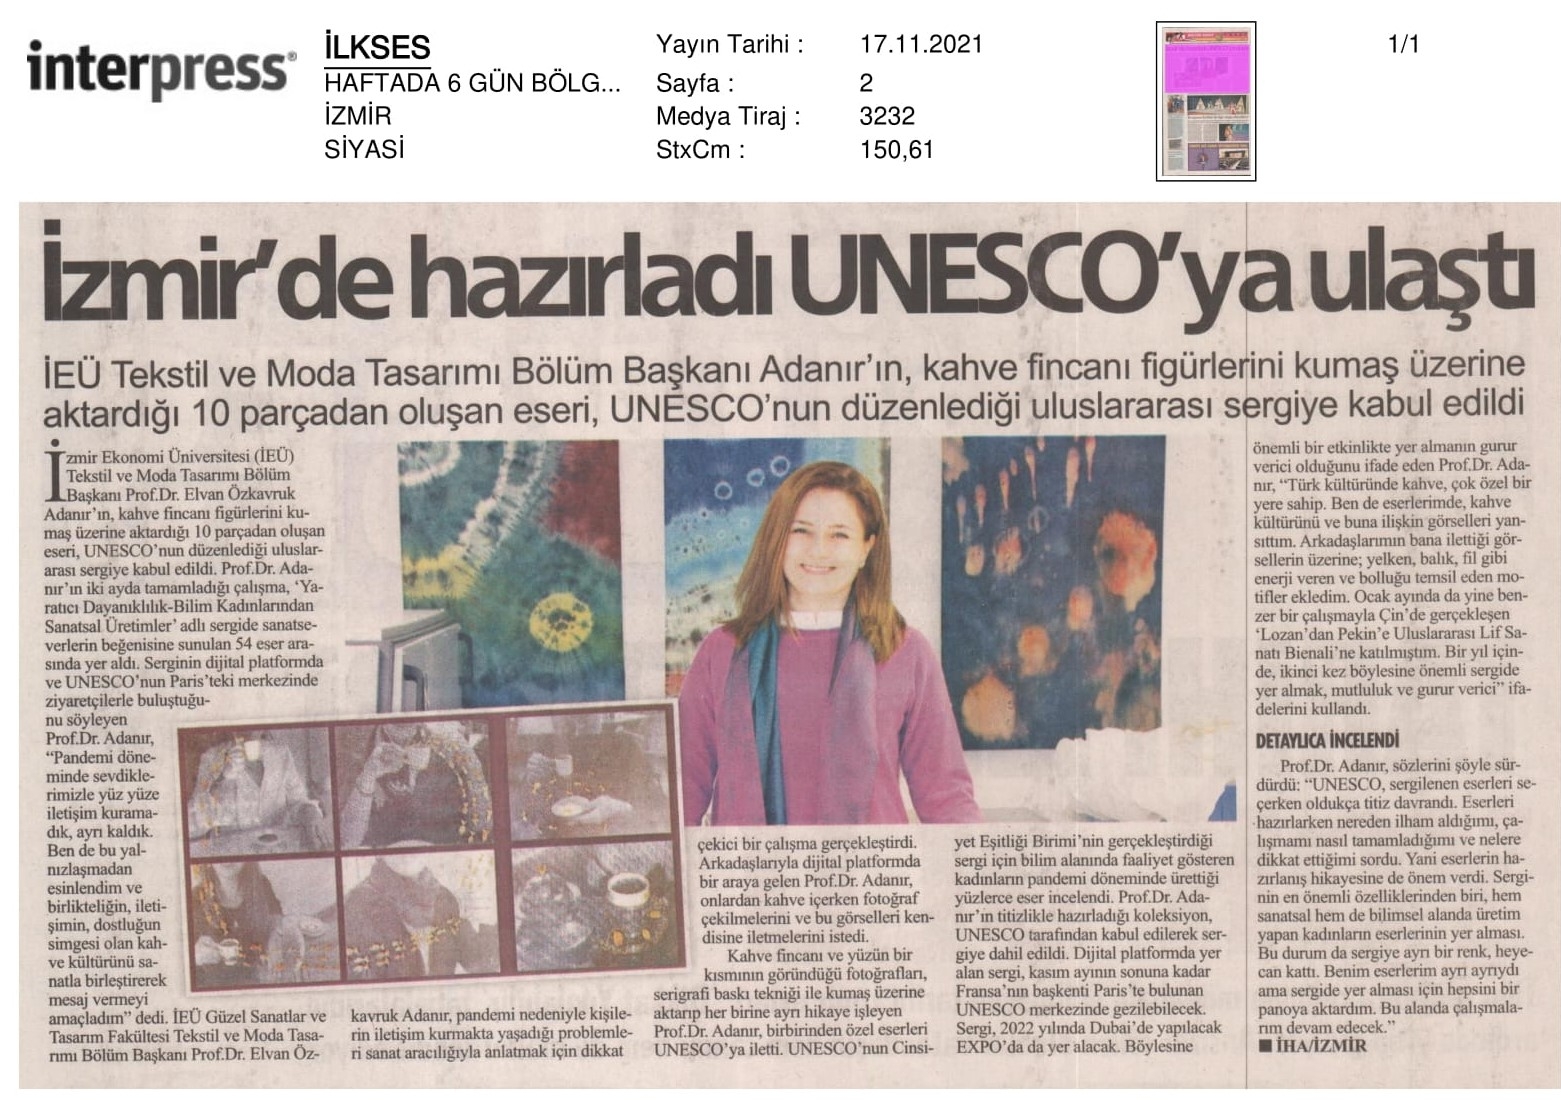 İzmir’de hazırladı, UNESCO’ya ulaştı